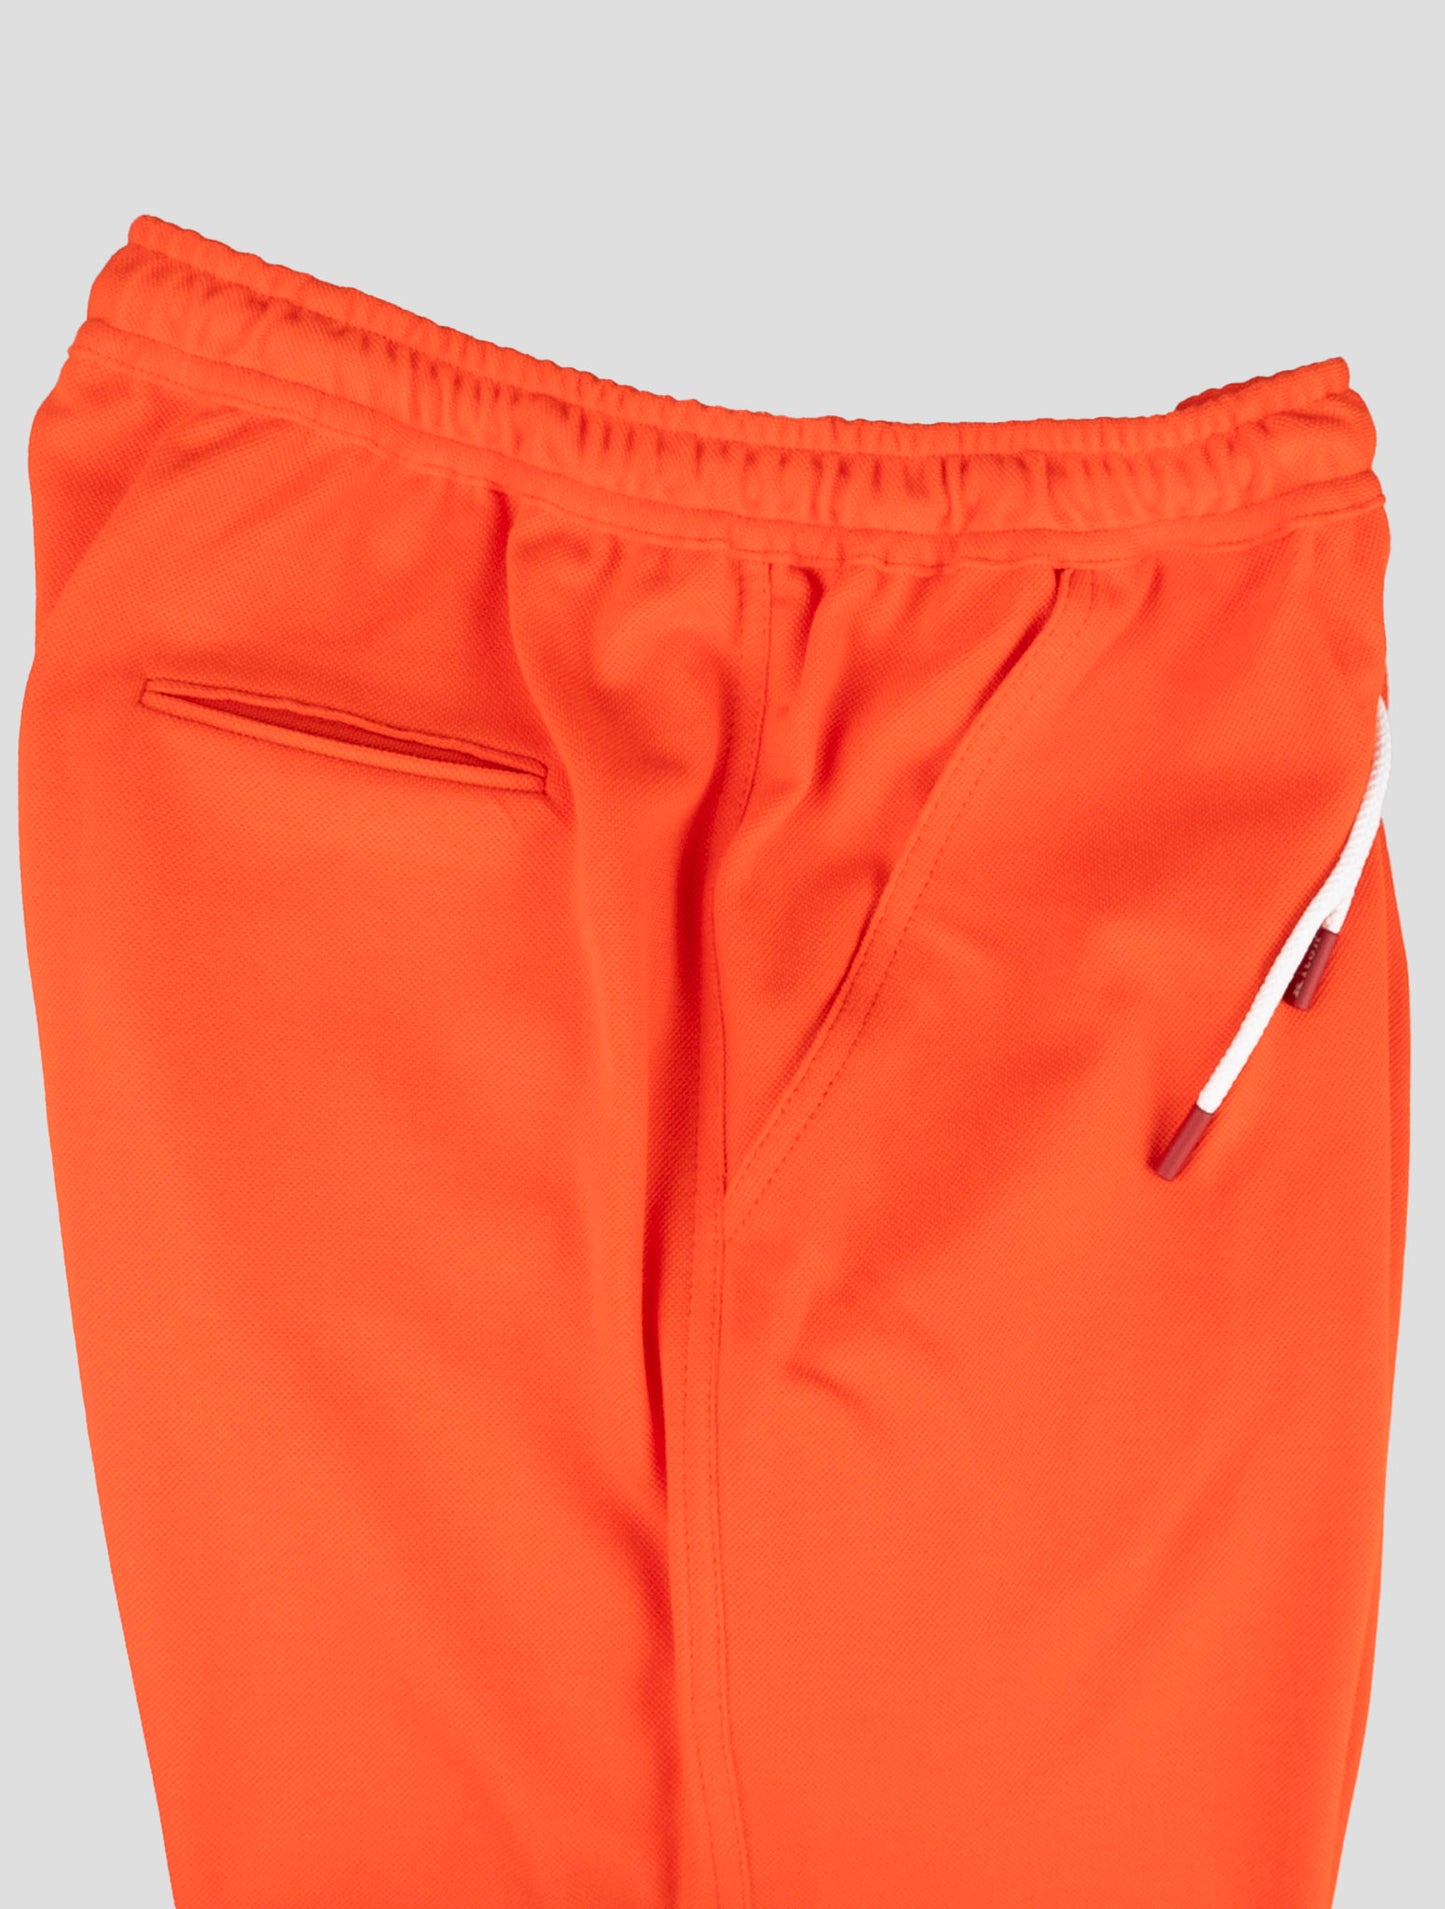 Kiton Matching Outfit - Blå Umbi og Orange Short Pants Træningsdragt